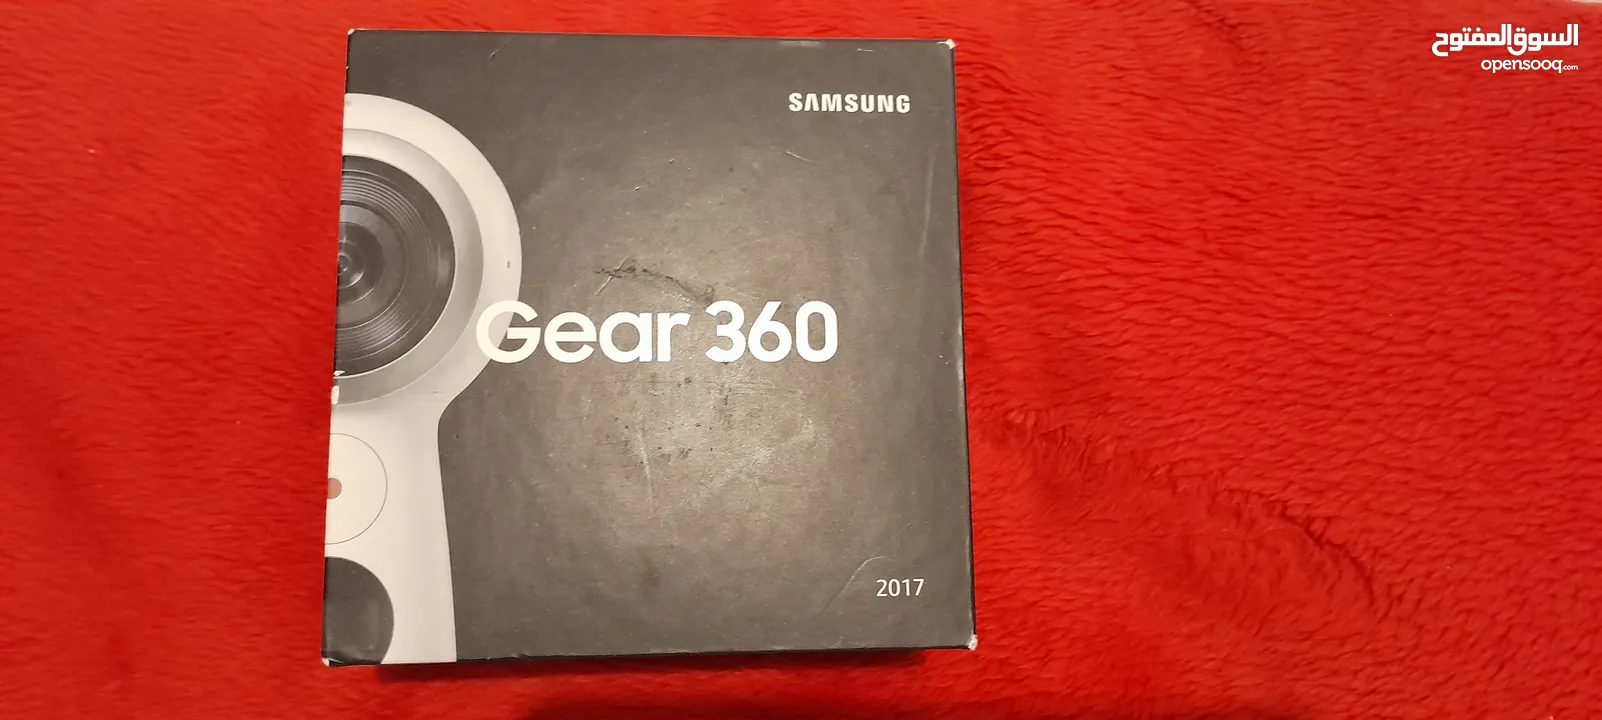 Samsung camera gear 360